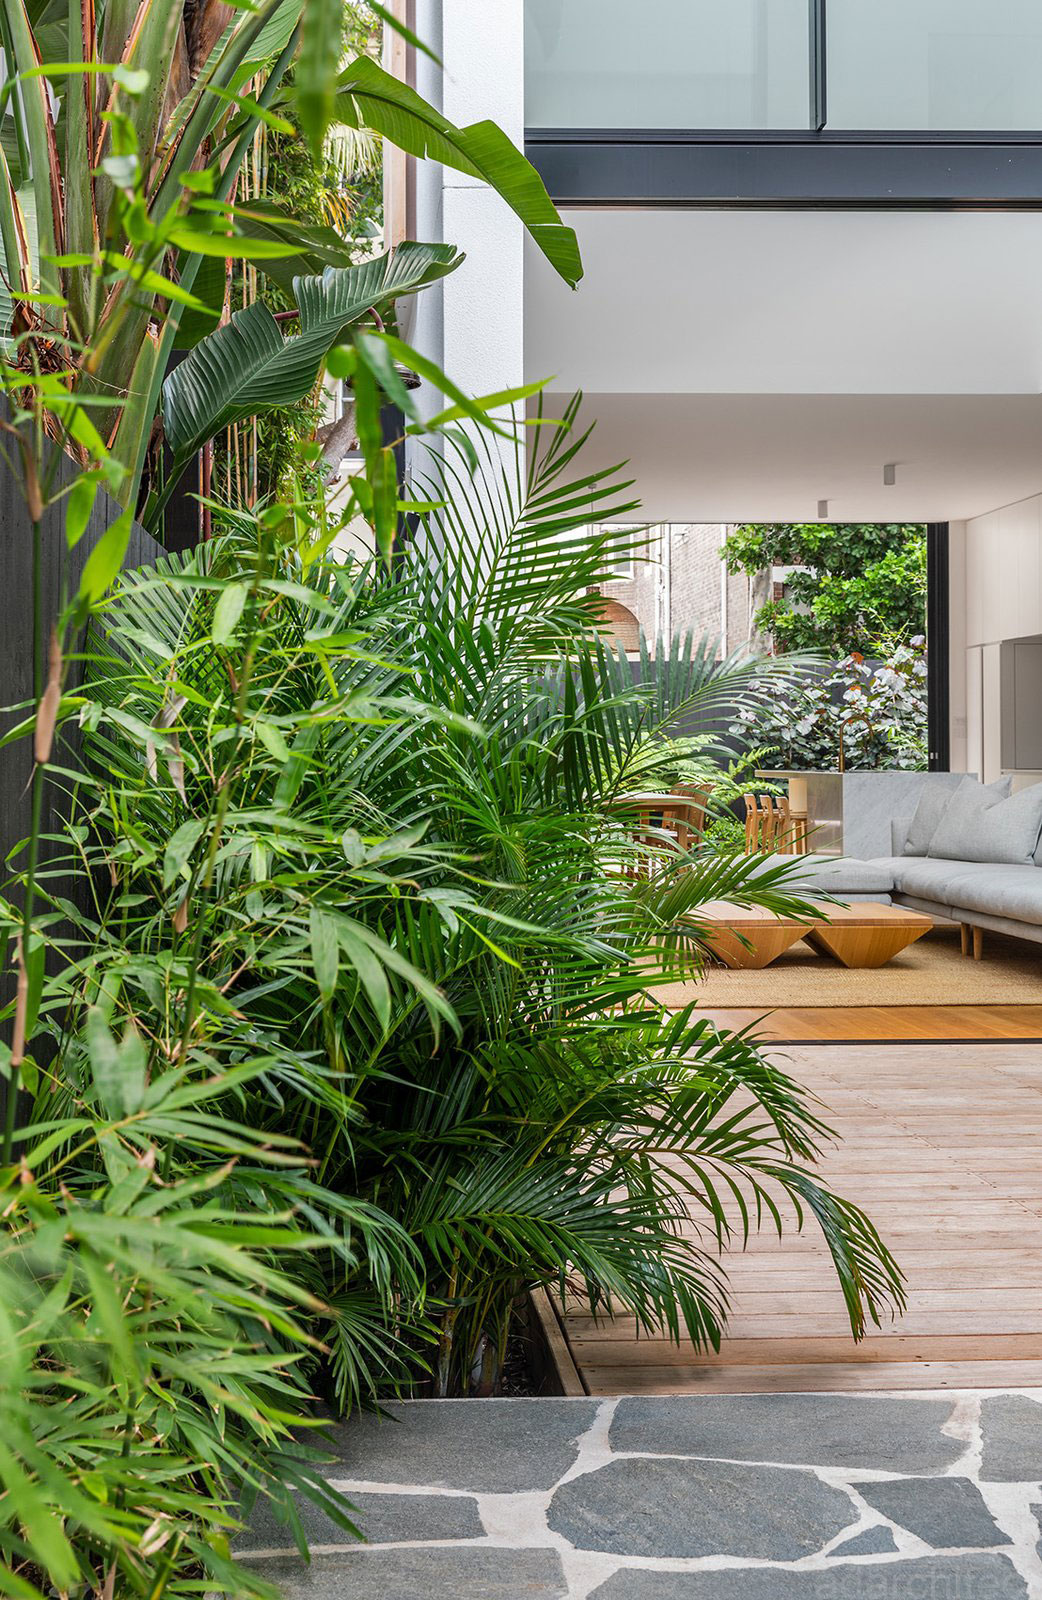 biệt thự nhà vườn 2 tầng: không gian xanh mát giúp thông thoáng và tăng sinh khí nhà ở